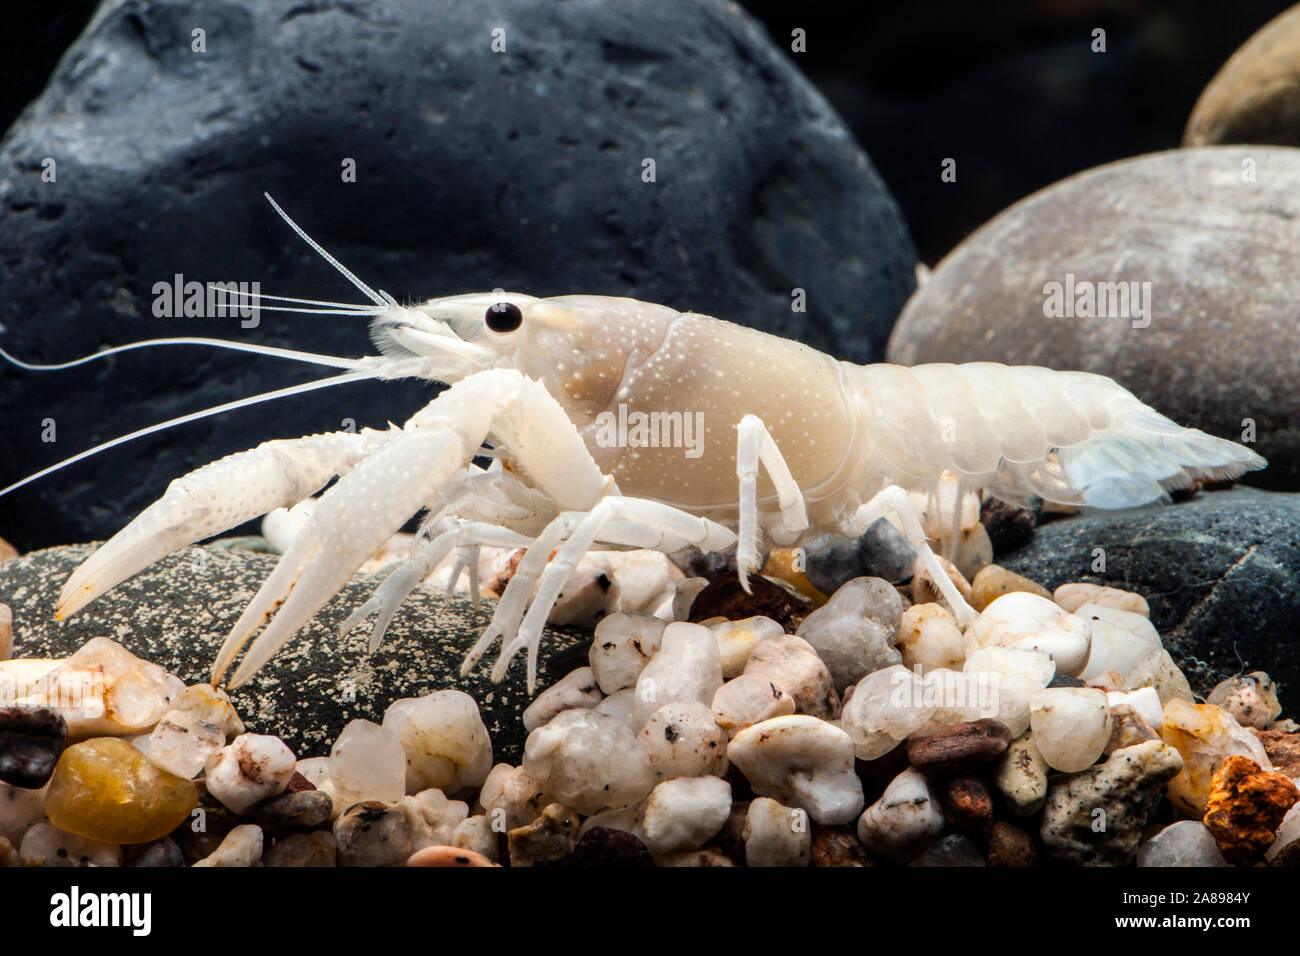 Procambarus clarkii Weiss',Sumpfkrebs Weiss,Louisiana crayfish Stock Photo